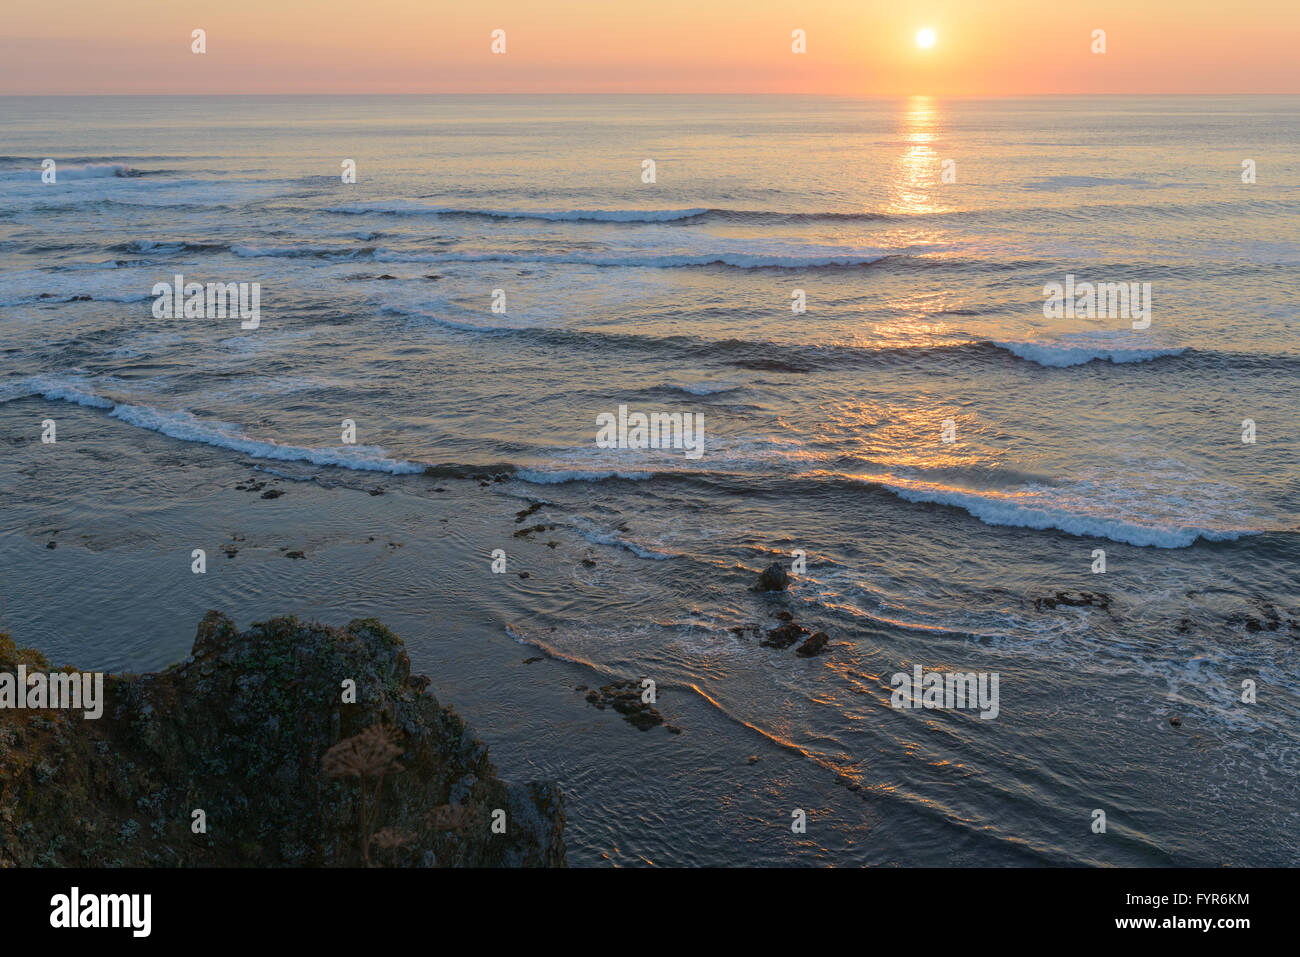 Dawn on the Sea, Sakhalin Island, Russia. Stock Photo